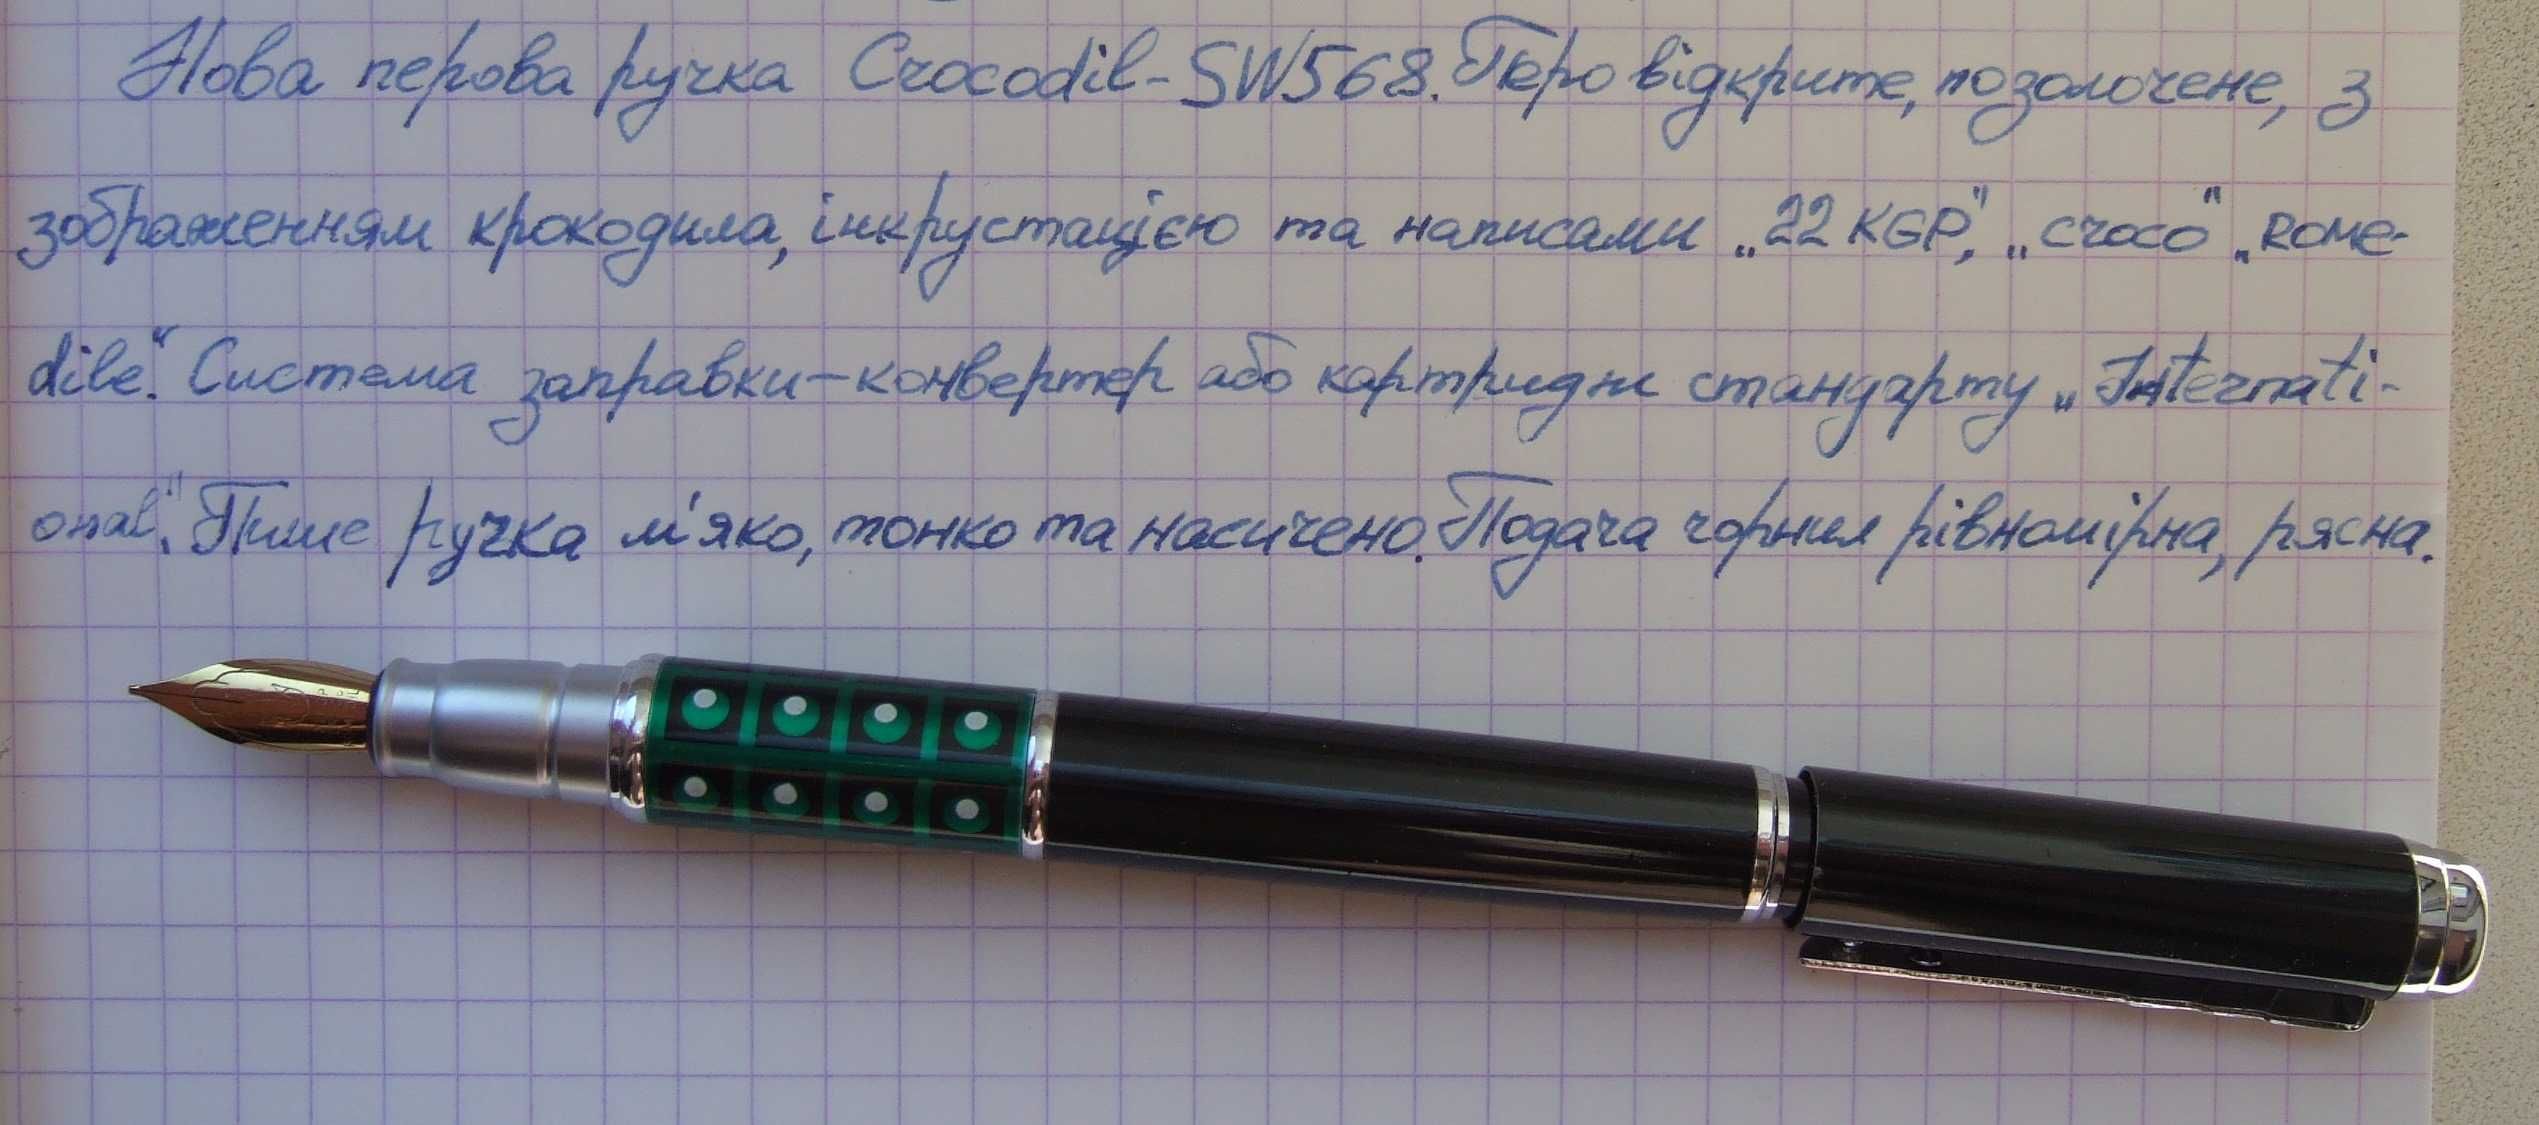 Металева перова ручка Crocodil SW-568. Пише м'яко. тонко і насичено